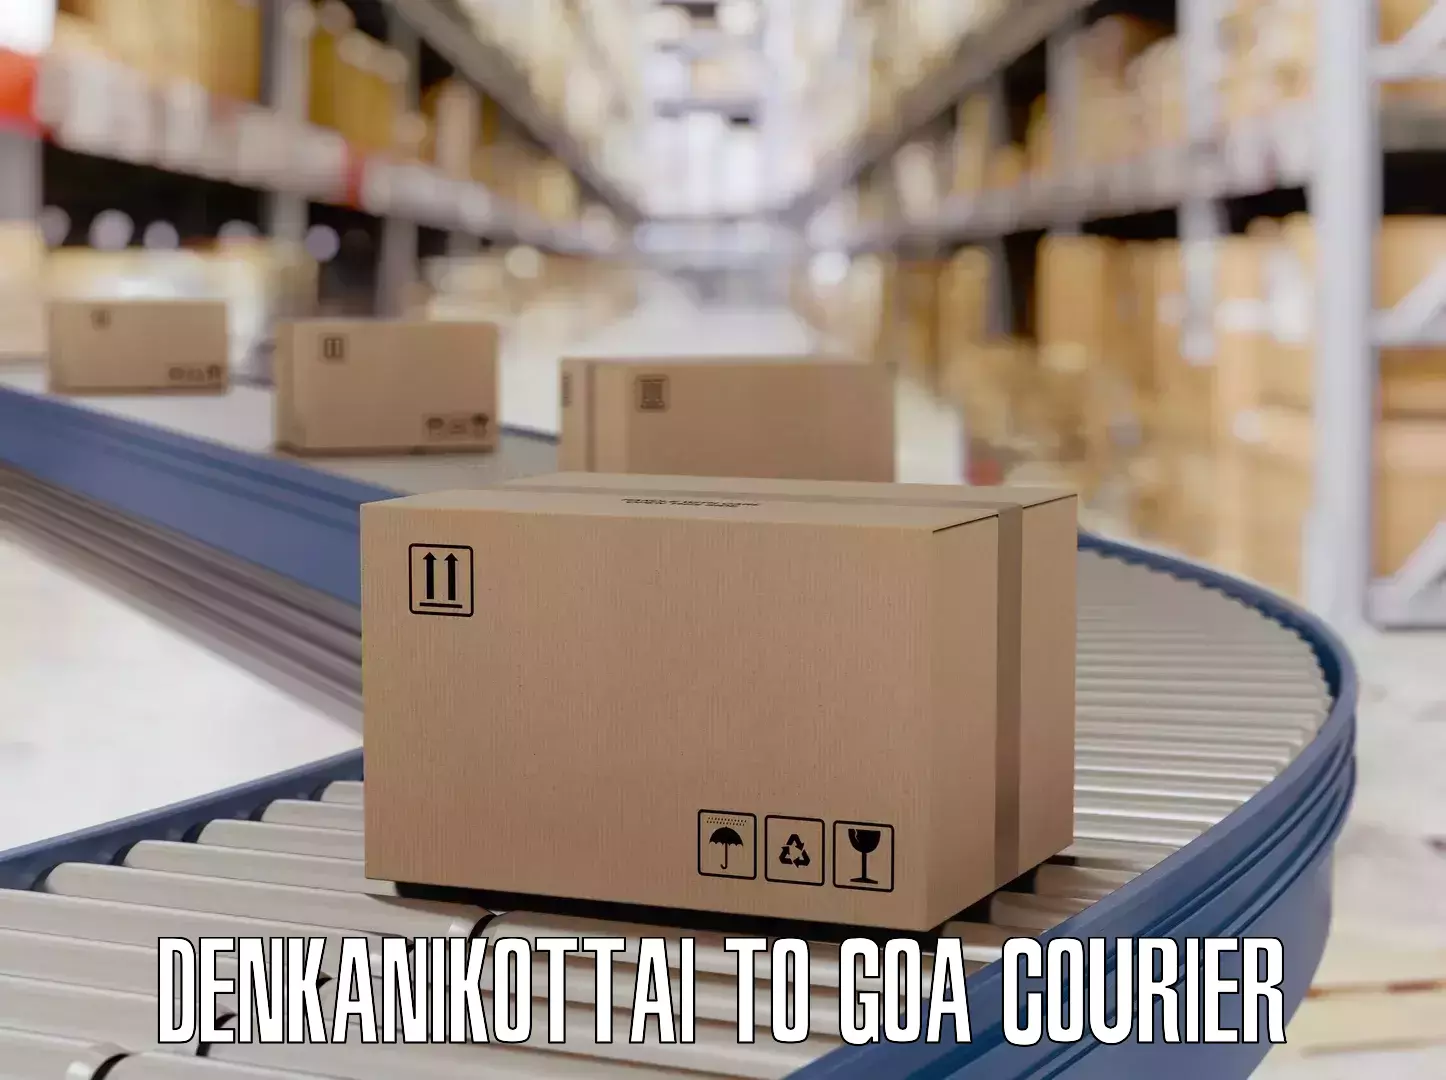 Luggage delivery optimization Denkanikottai to Goa